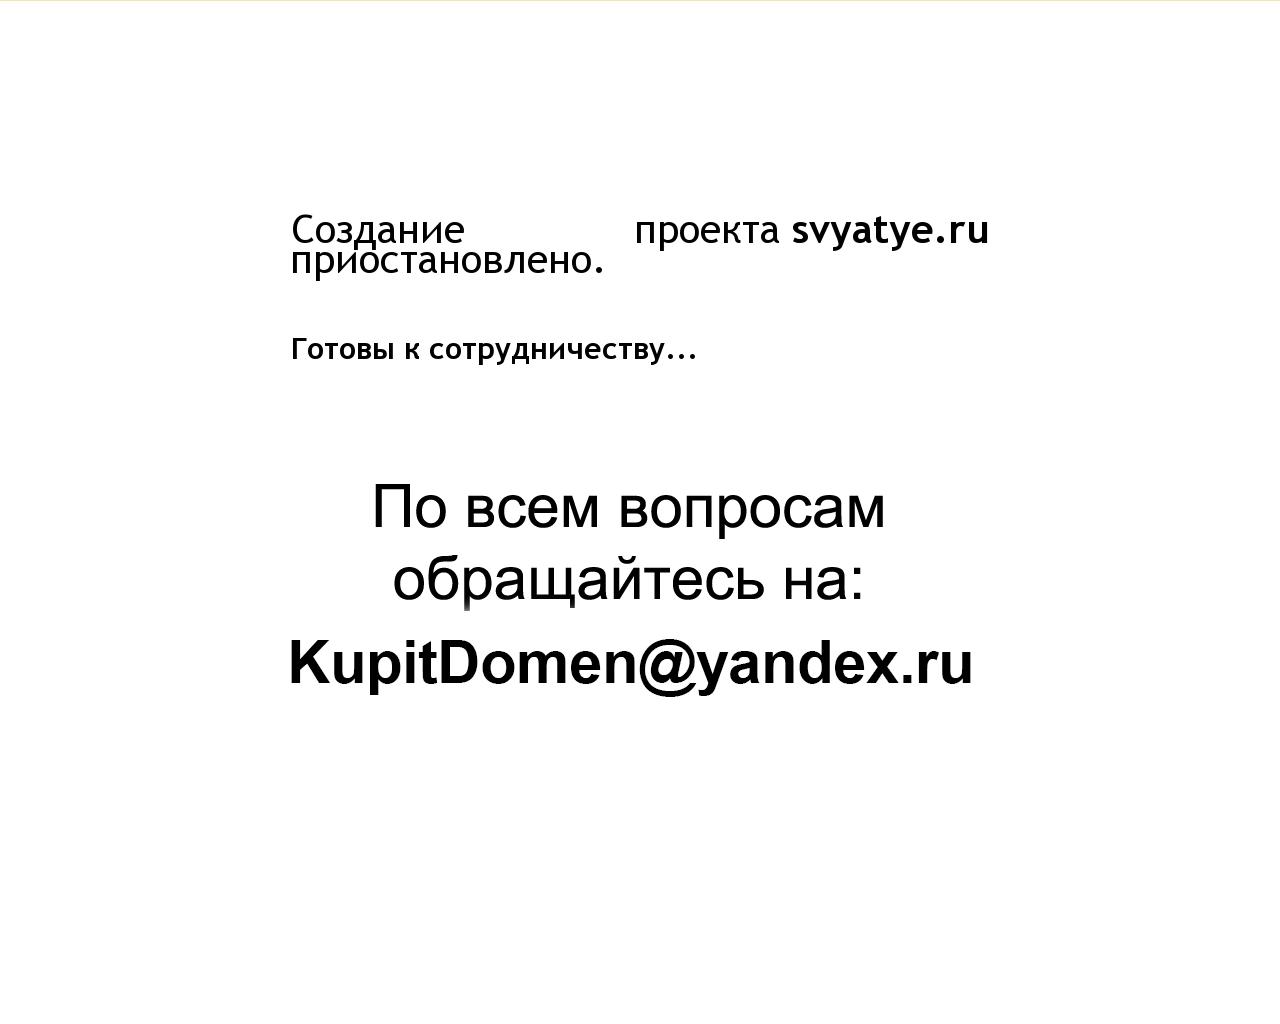 Изображение сайта svyatye.ru в разрешении 1280x1024